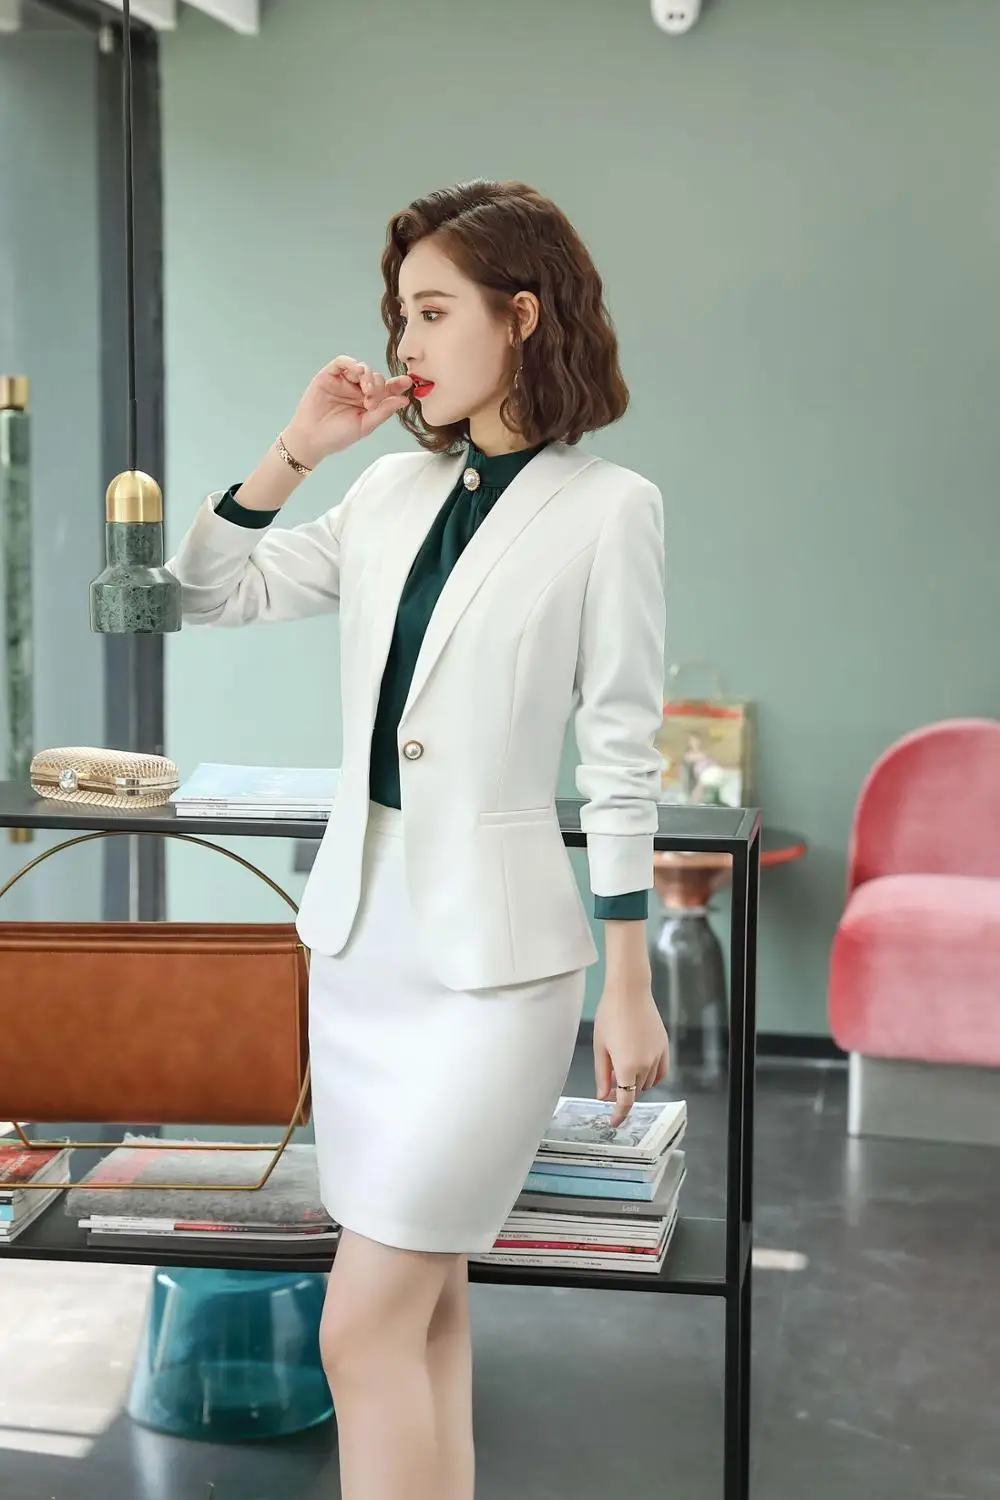 IZICFLY стиль офисная одежда белая юбка костюмы для женщин Униформа Элегантный бизнес леди блейзер и юбка комплект рабочая одежда большой размер